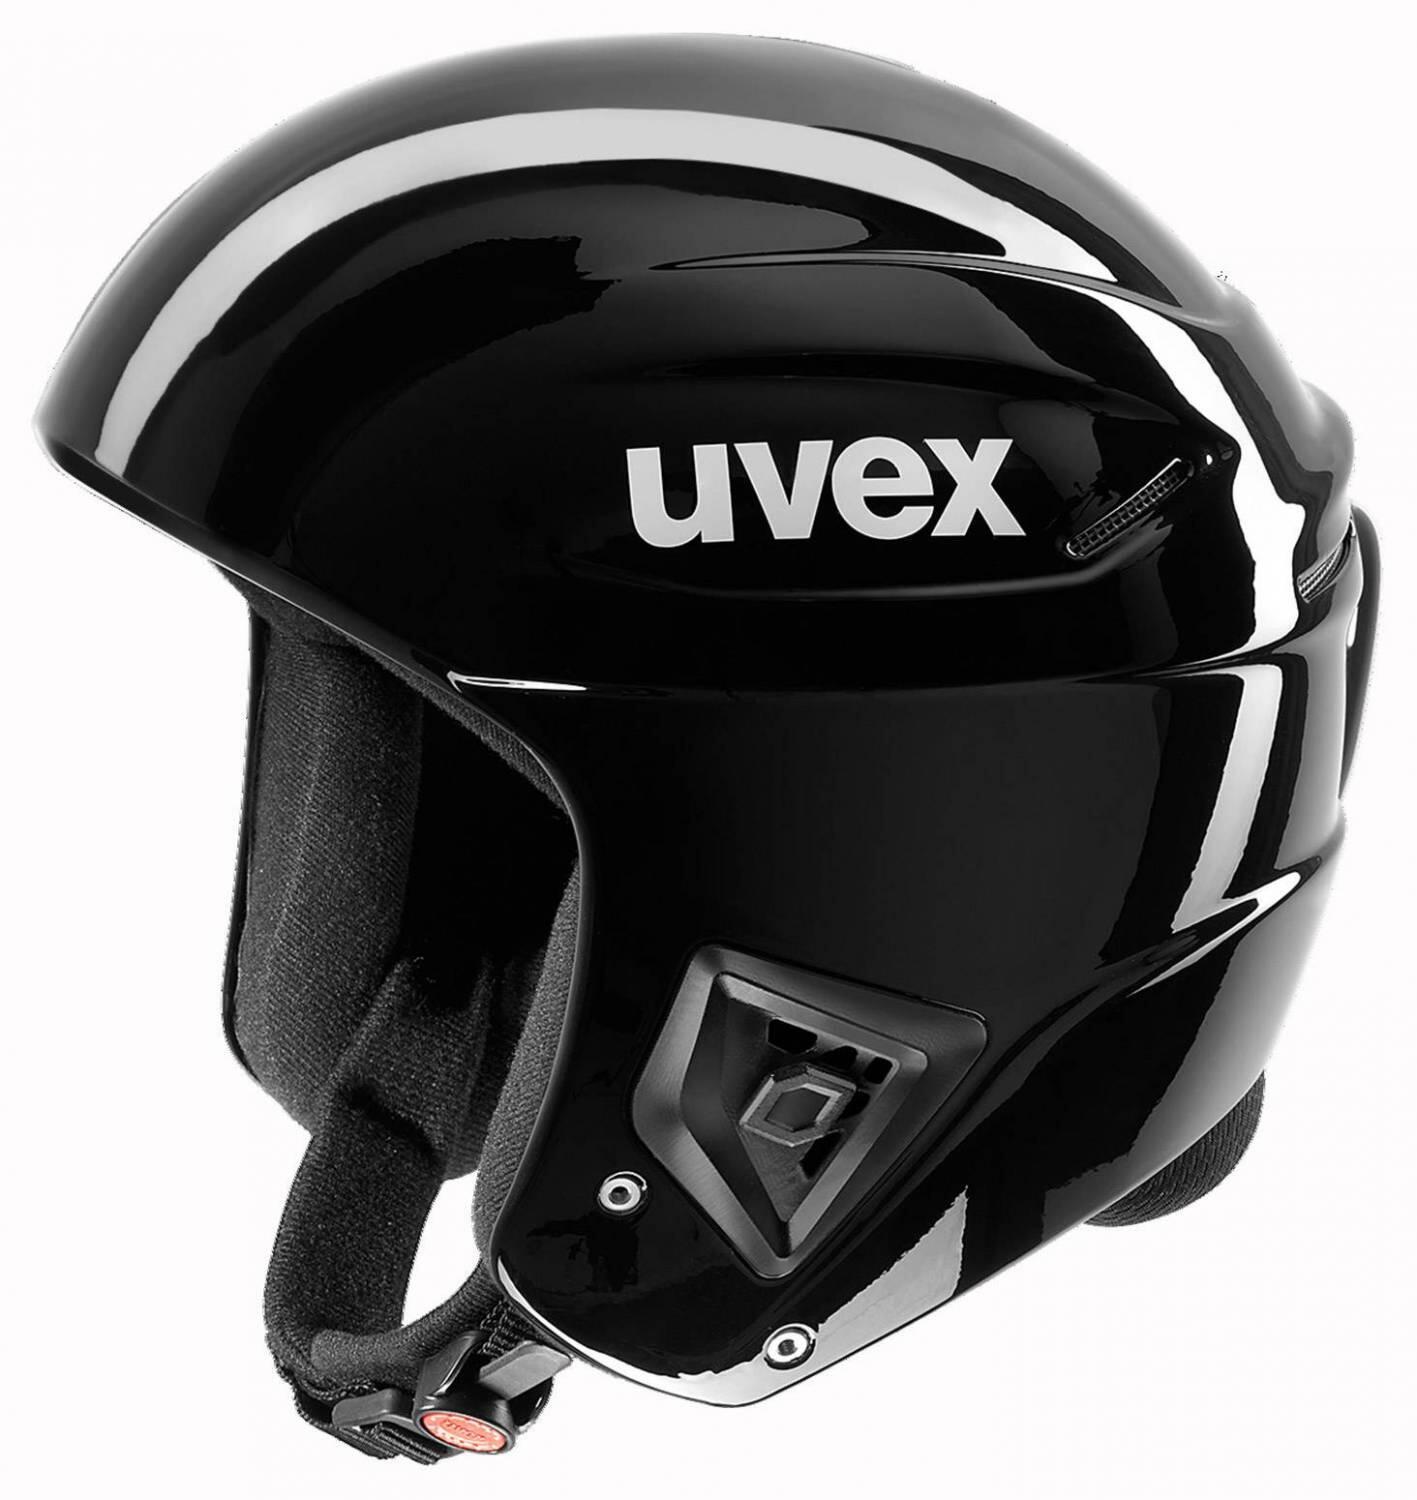 uvex Unisex - Erwachsene Race + Skihelm, Schwarz, 58-59